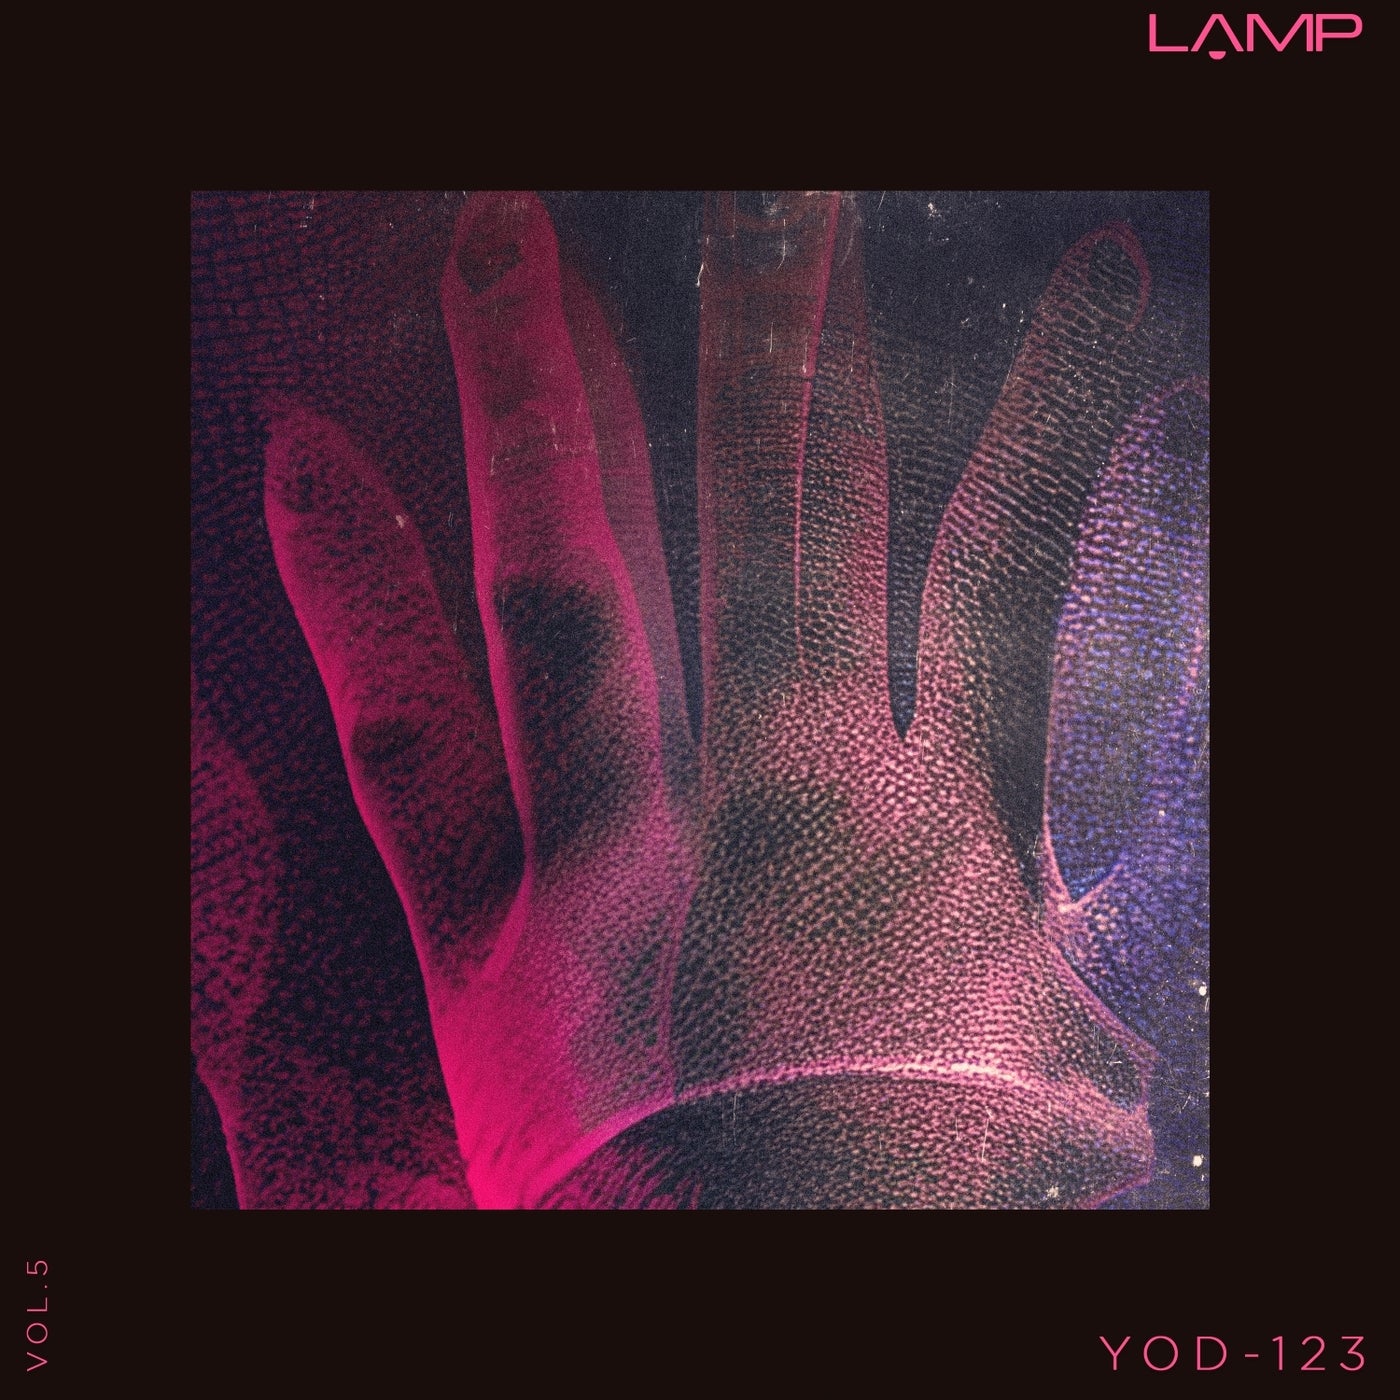 Yod-123, Vol. 5